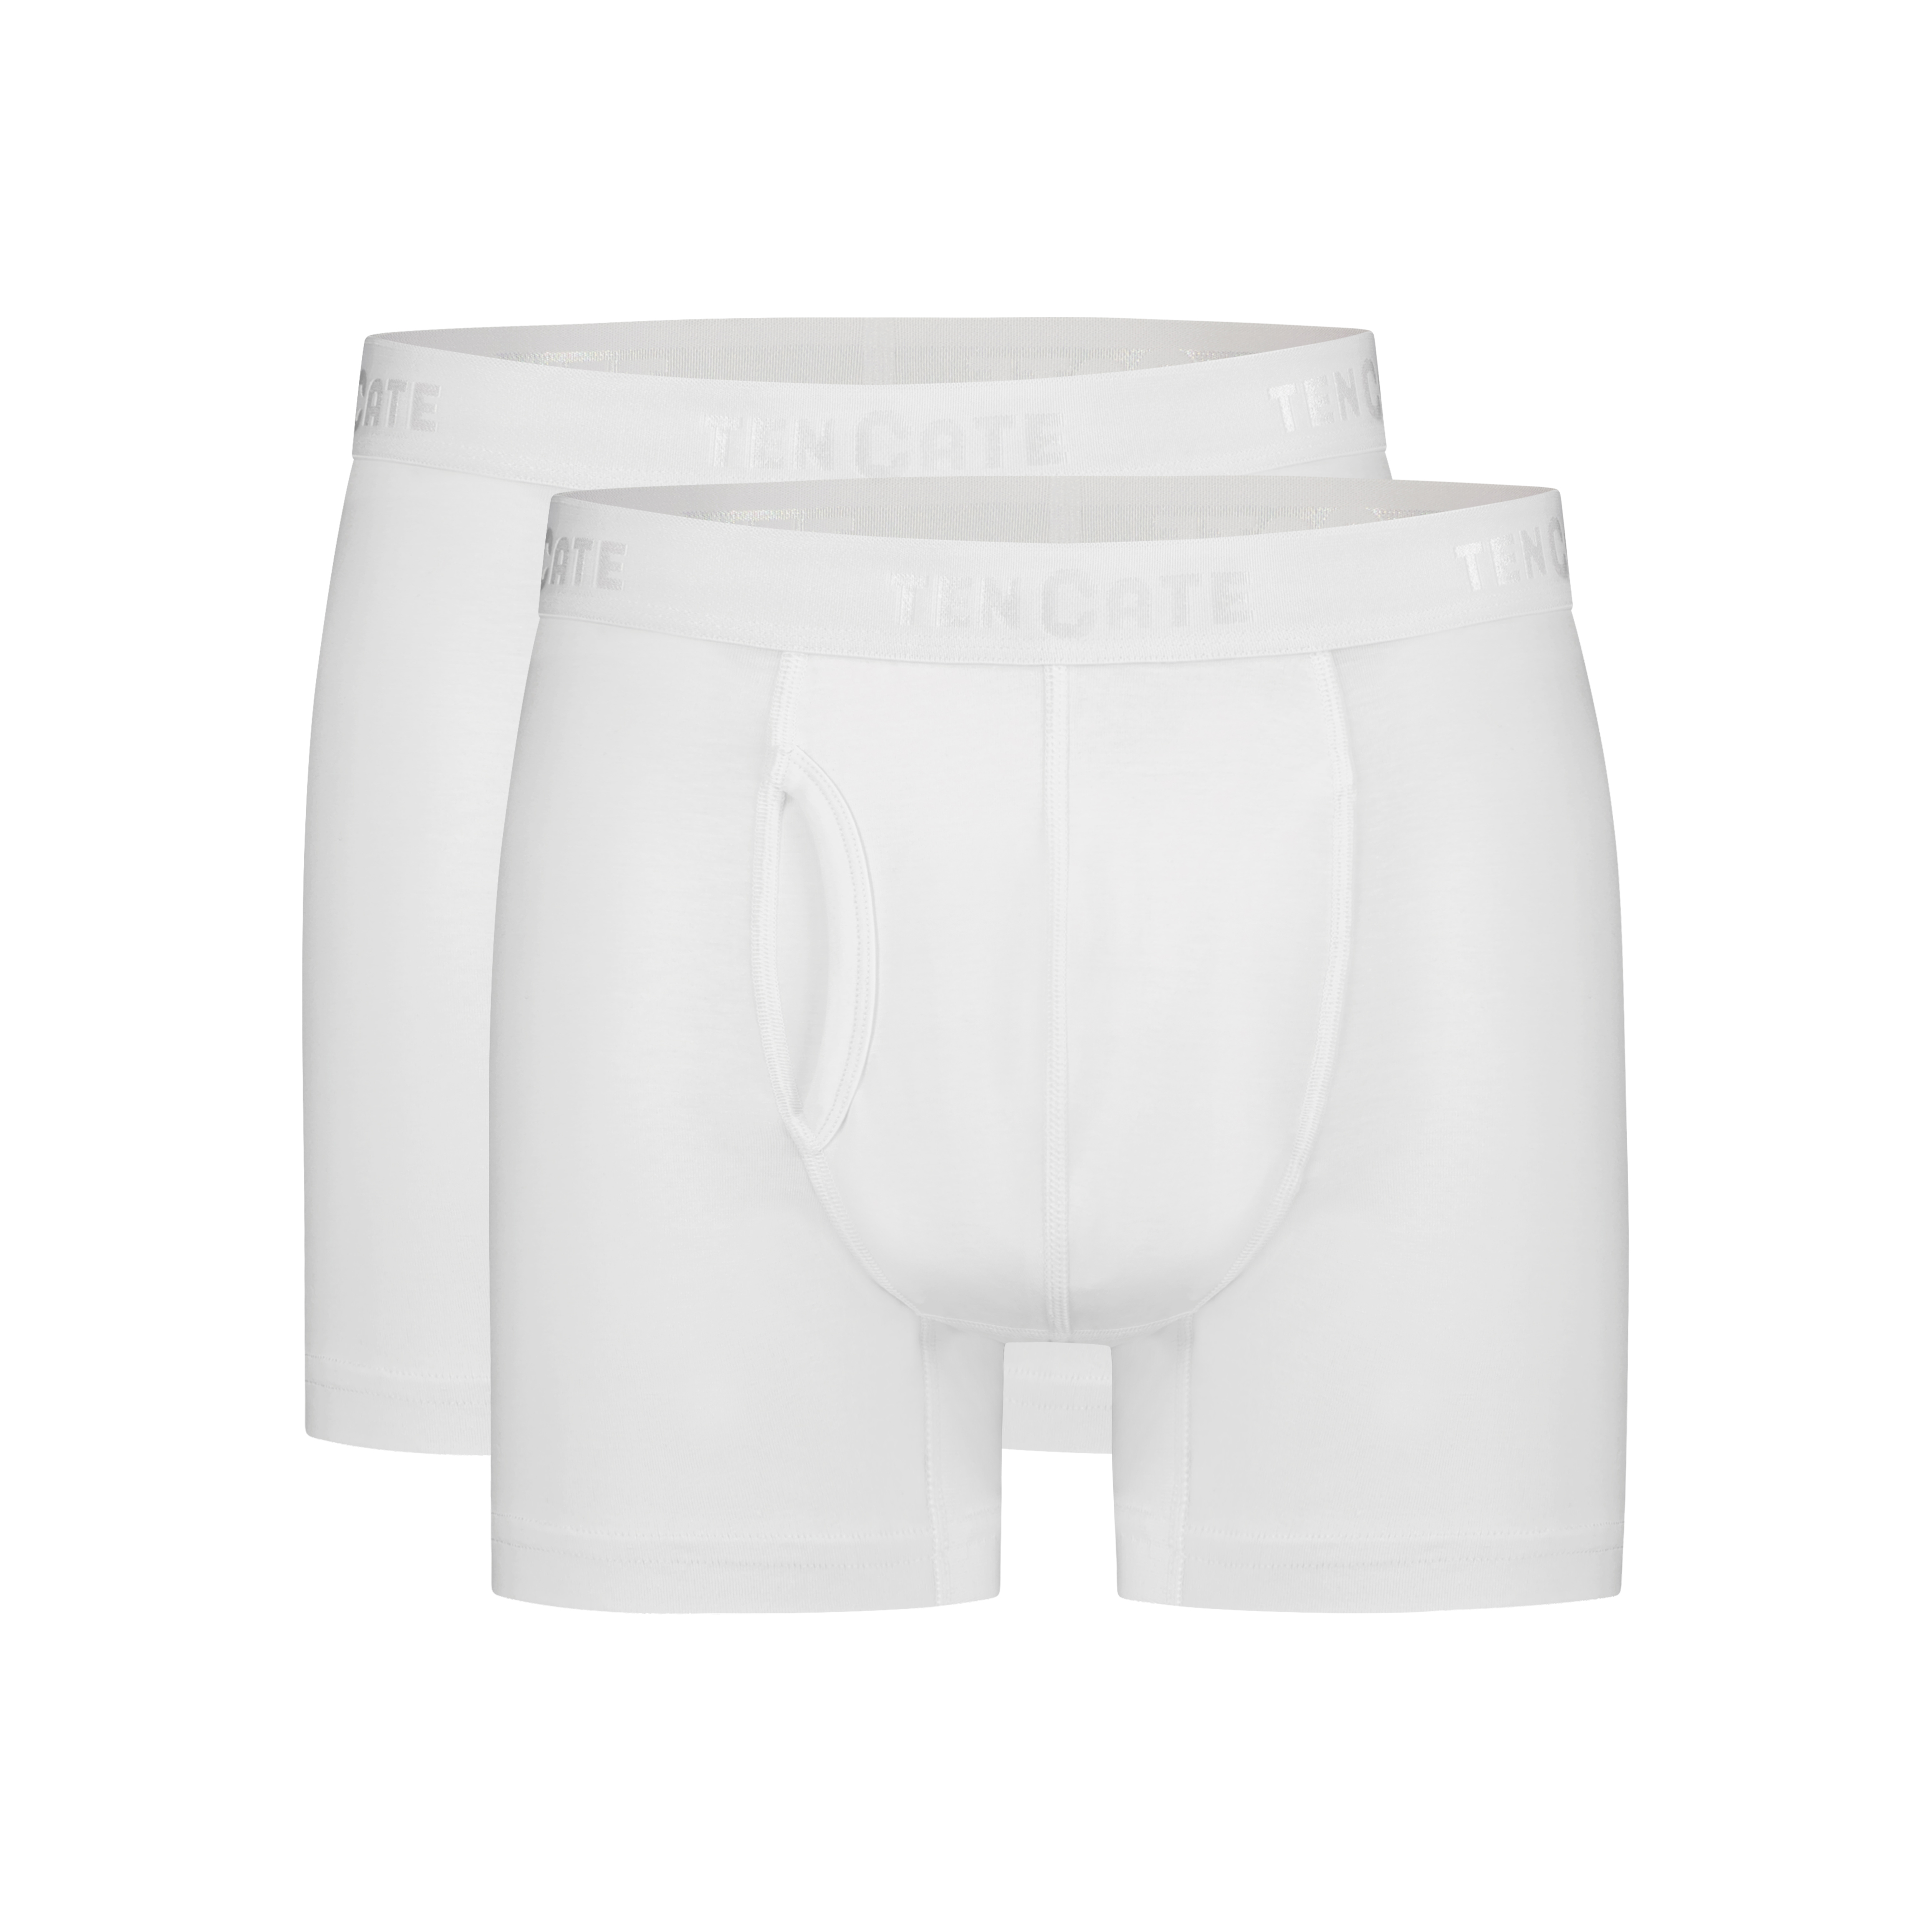 shorts met gulp grey melange 2 pack